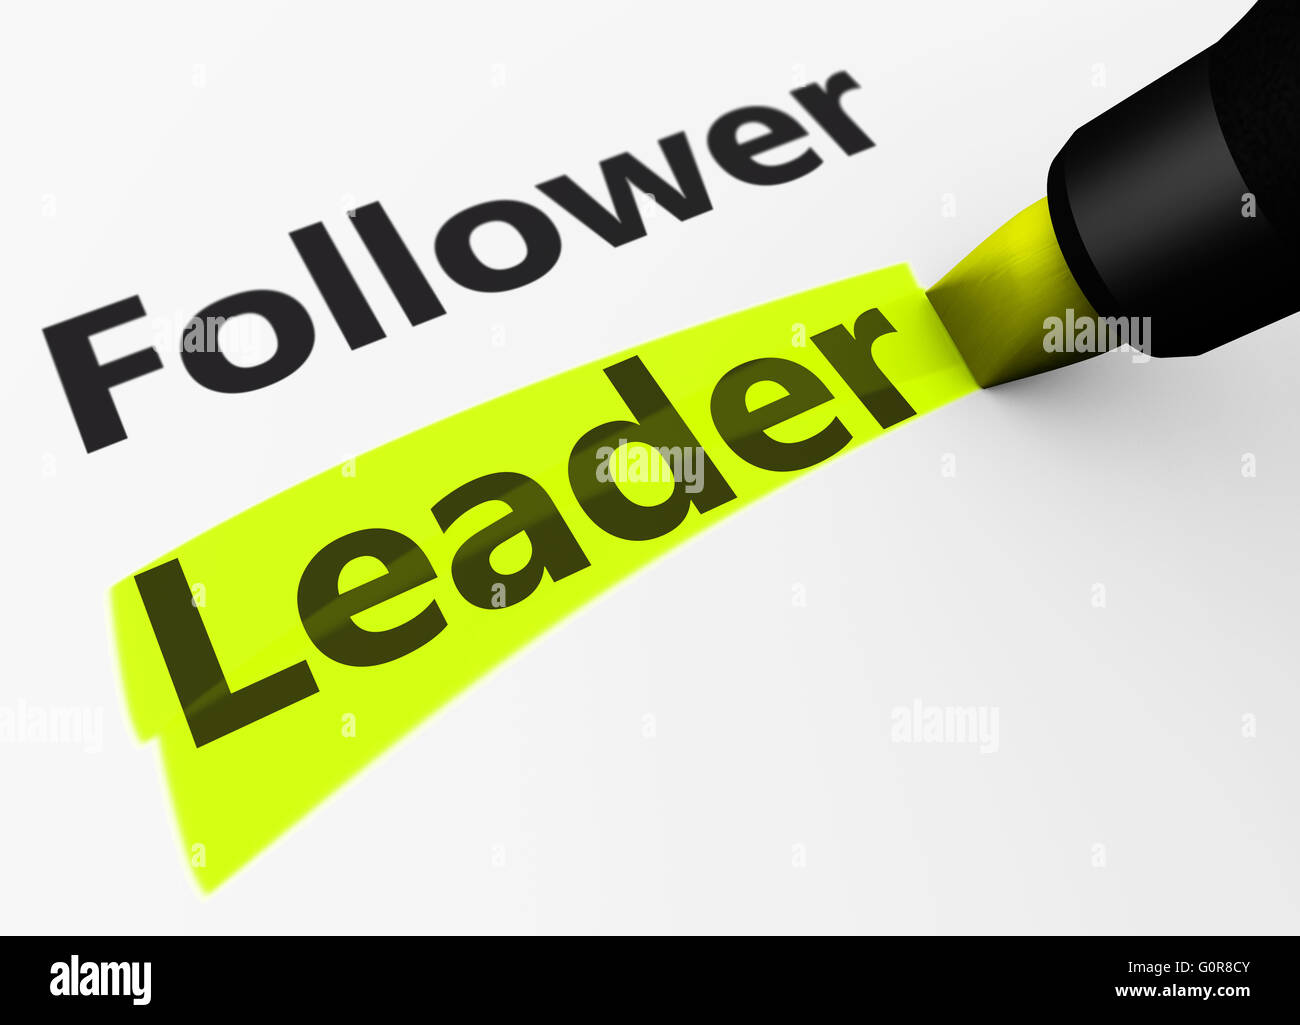 La leadership aziendale concetto con un rendering 3D di un seguace e leader la parola e il testo evidenziato con un indicatore giallo. Foto Stock